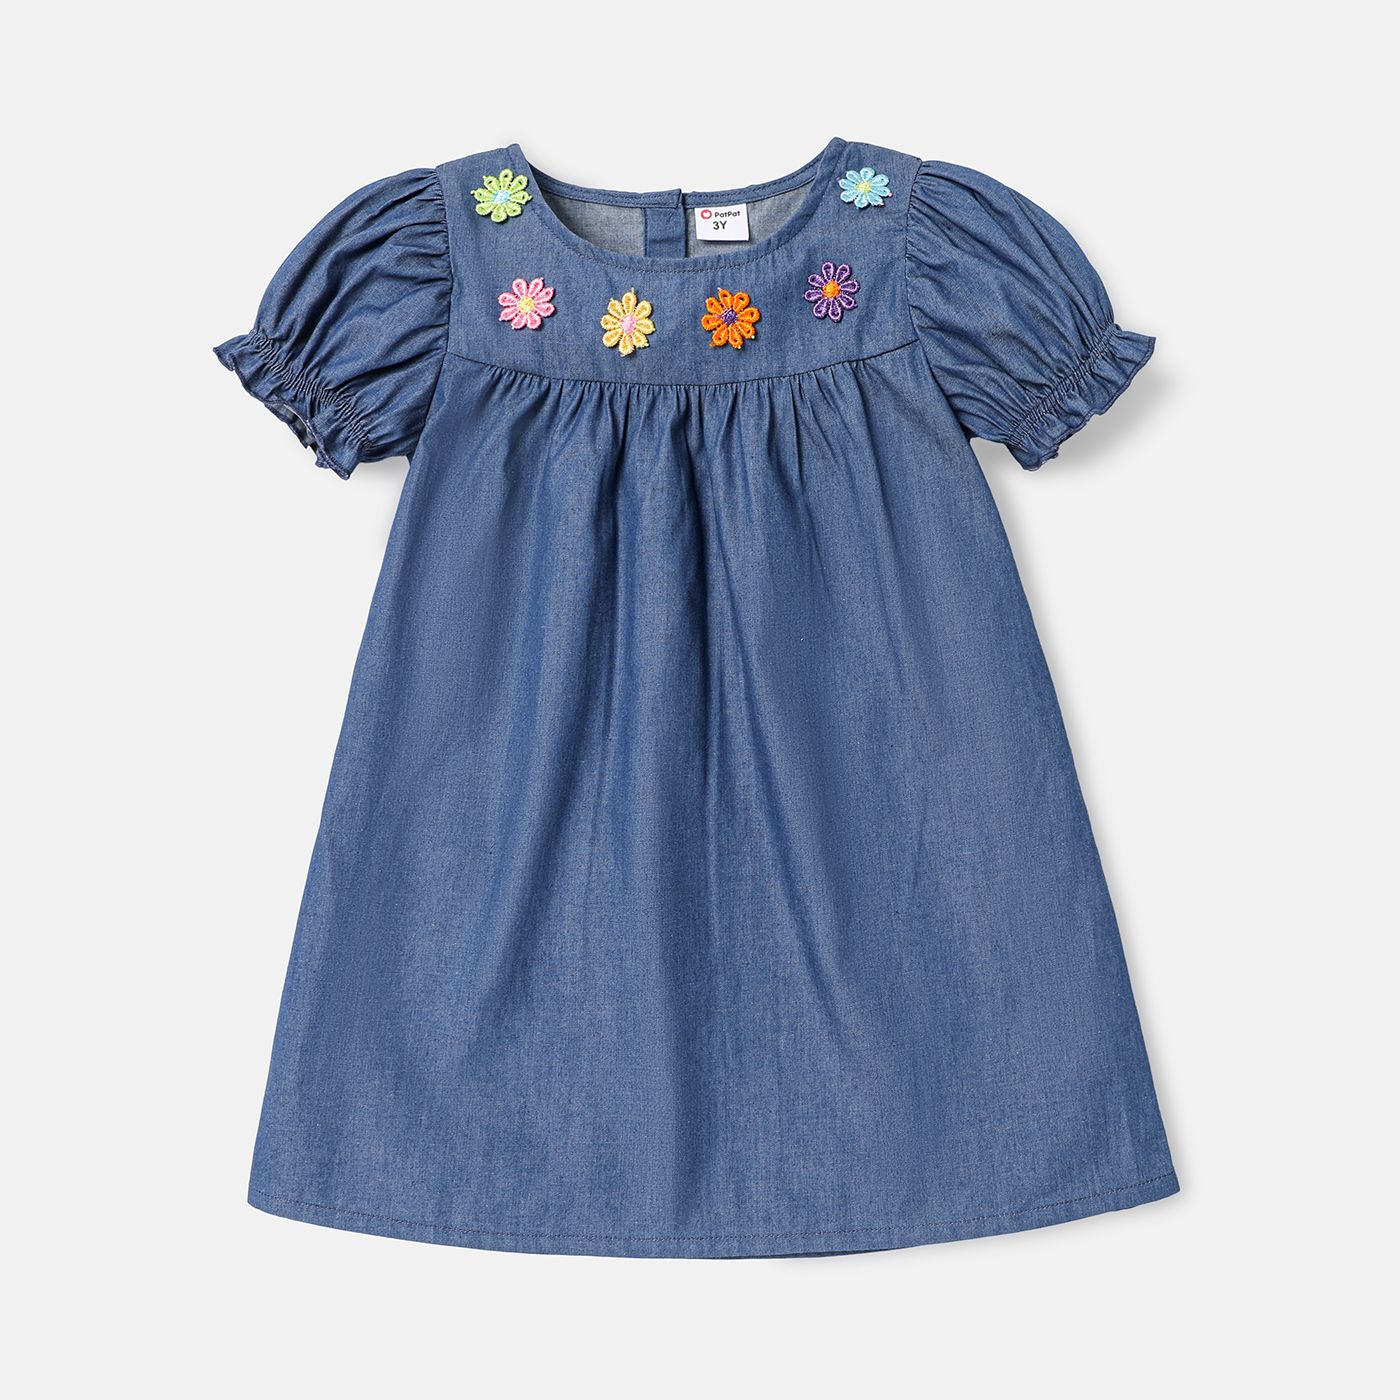 Toddler Girl 100% Cotton Floral Embroidered Short-sleeve Denim Dress